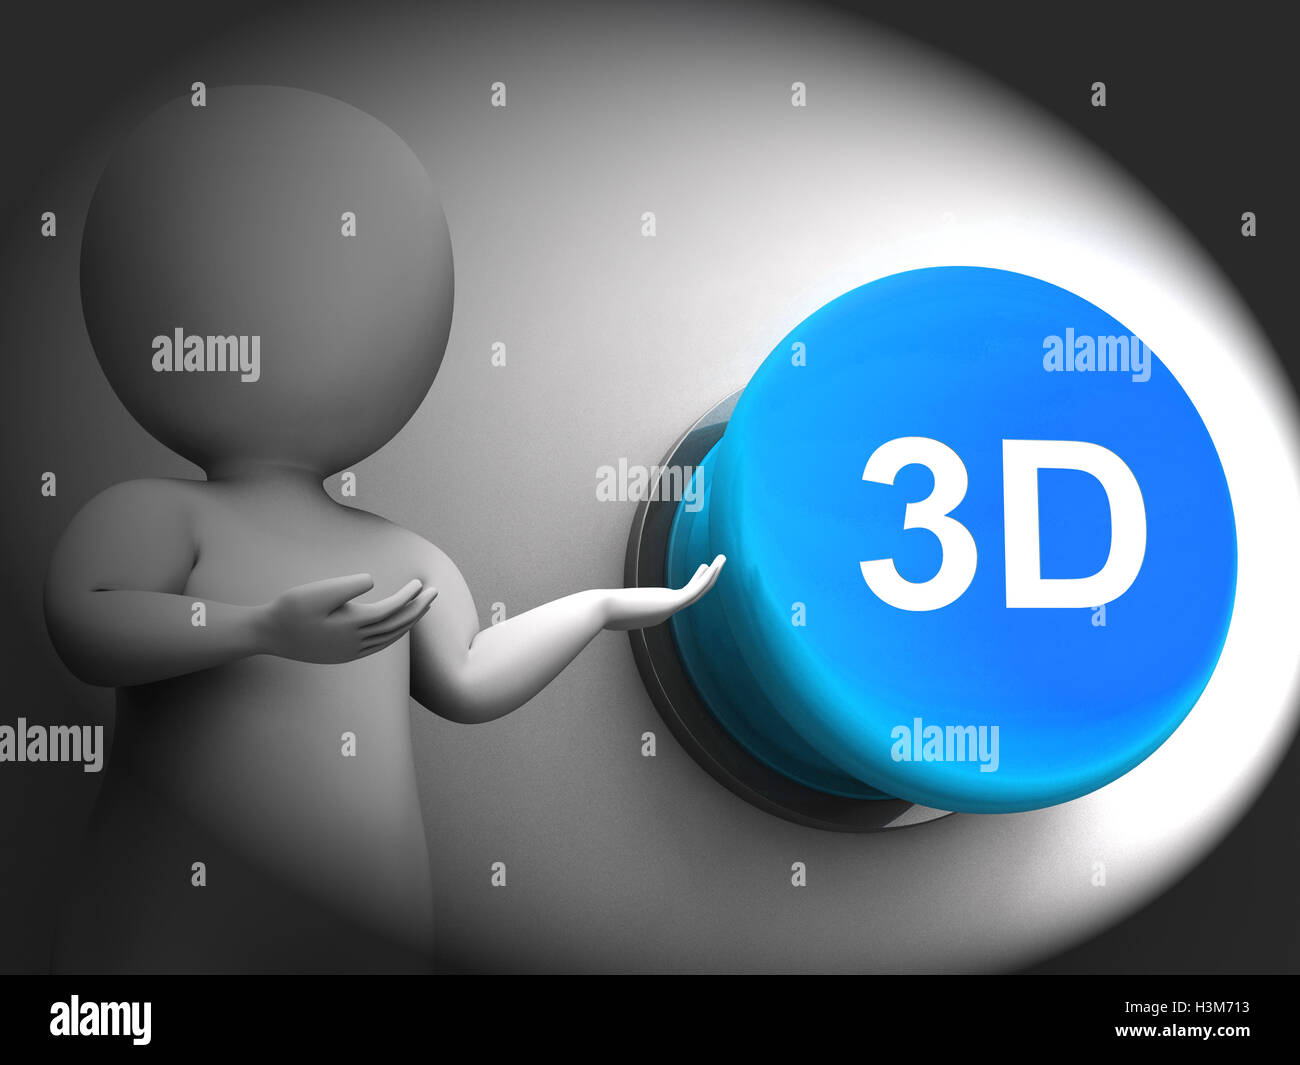 3D gepresste bedeutet drei dimensionales Objekt oder Bild Stockfoto